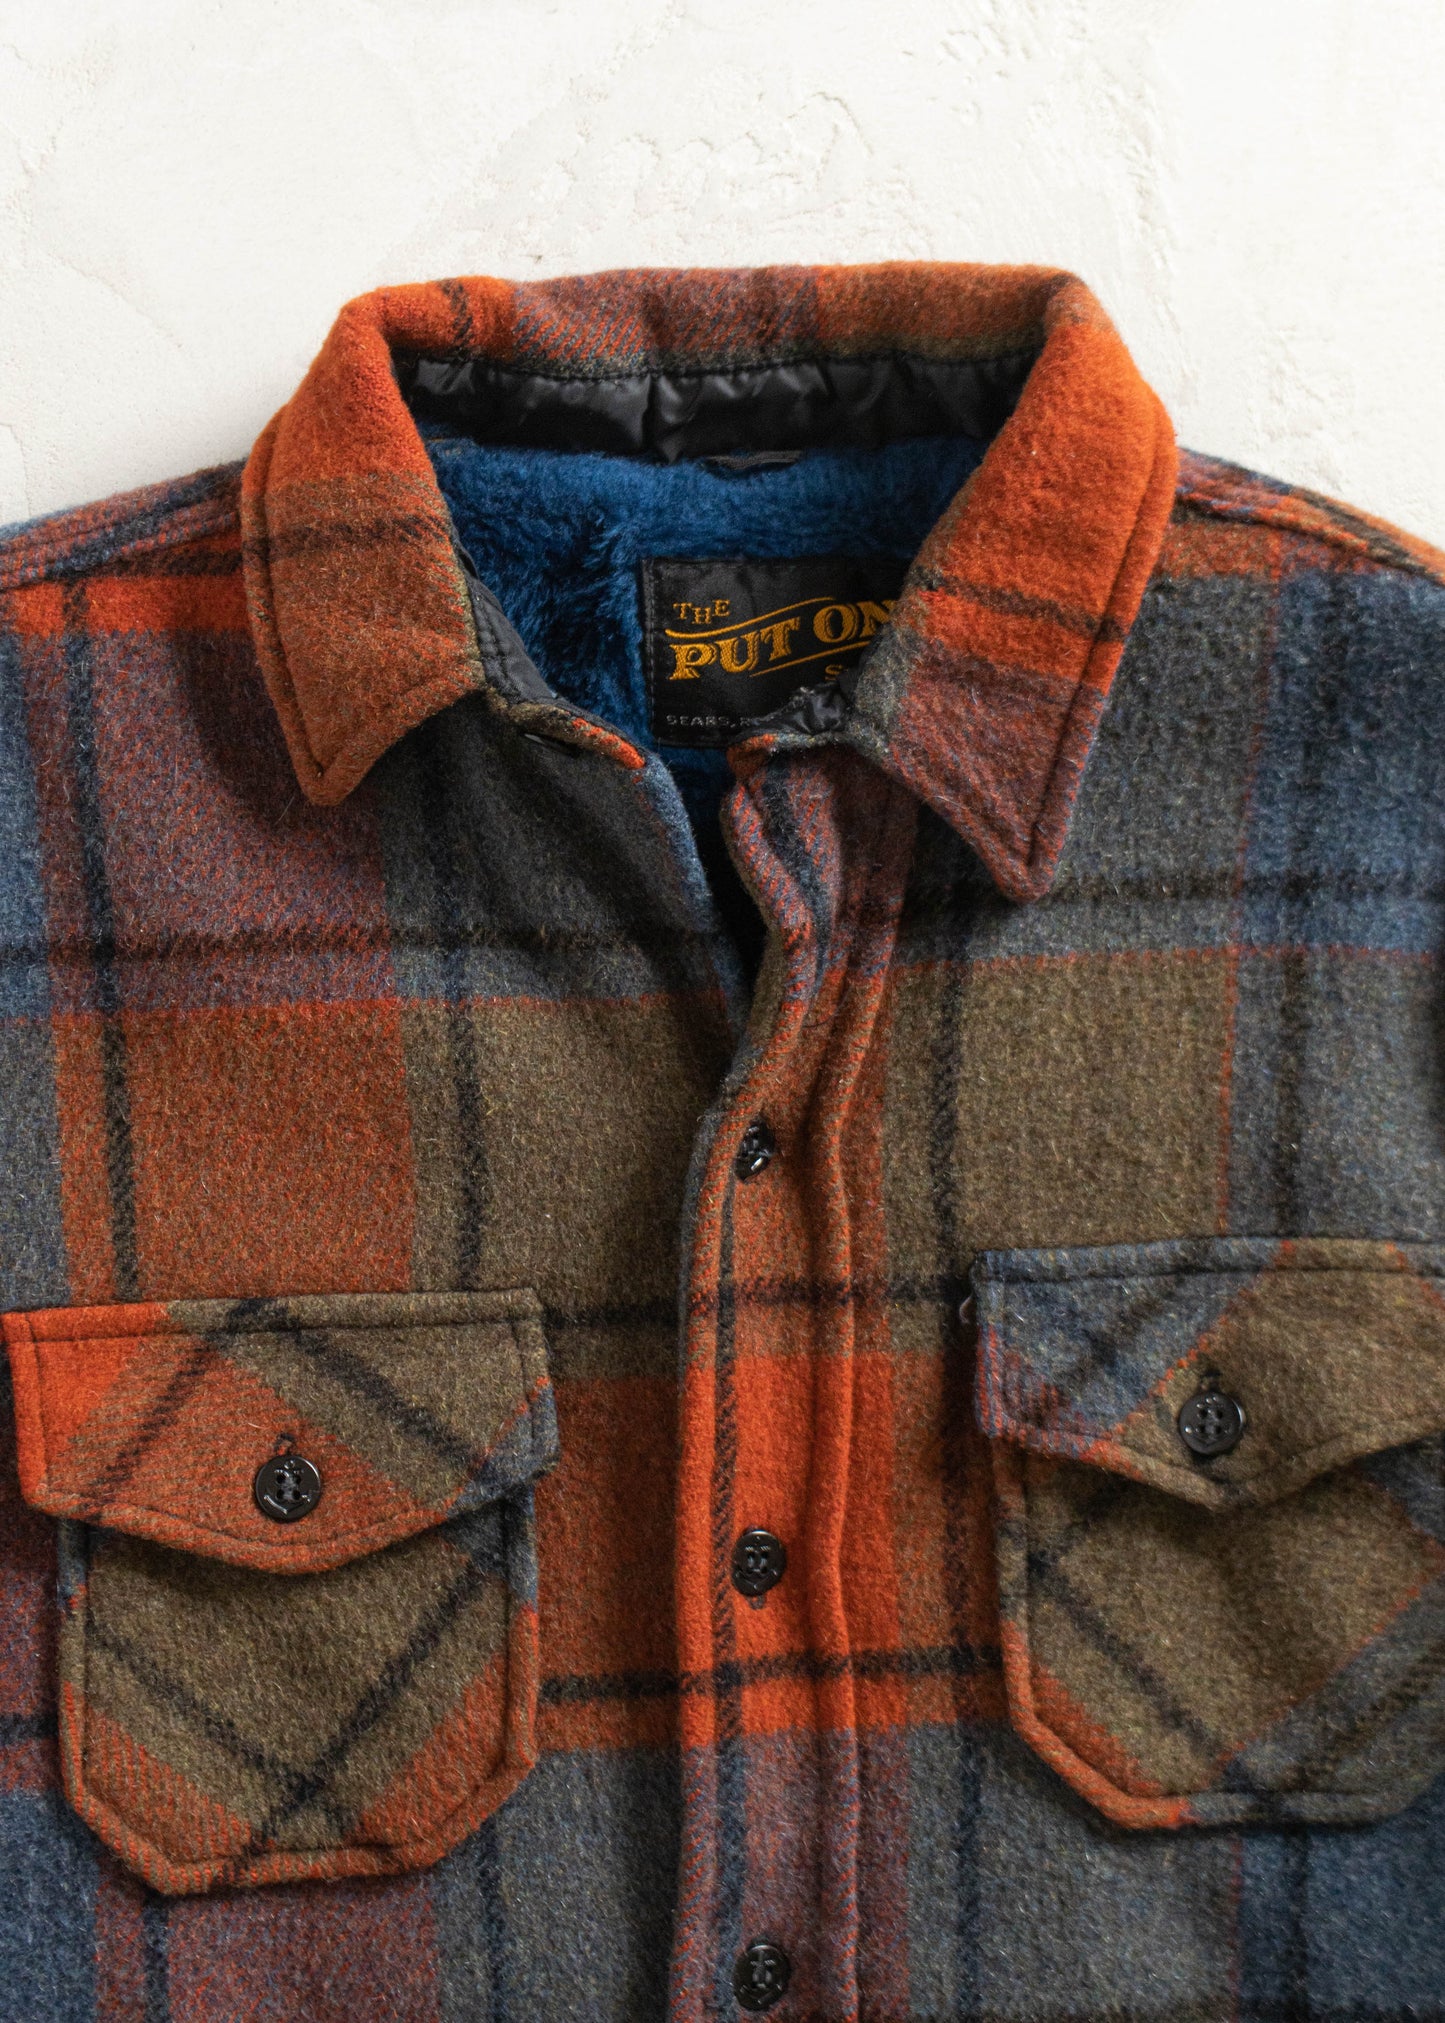 Vintage 1970s Sears Wool Flannel Jacket Size S/M